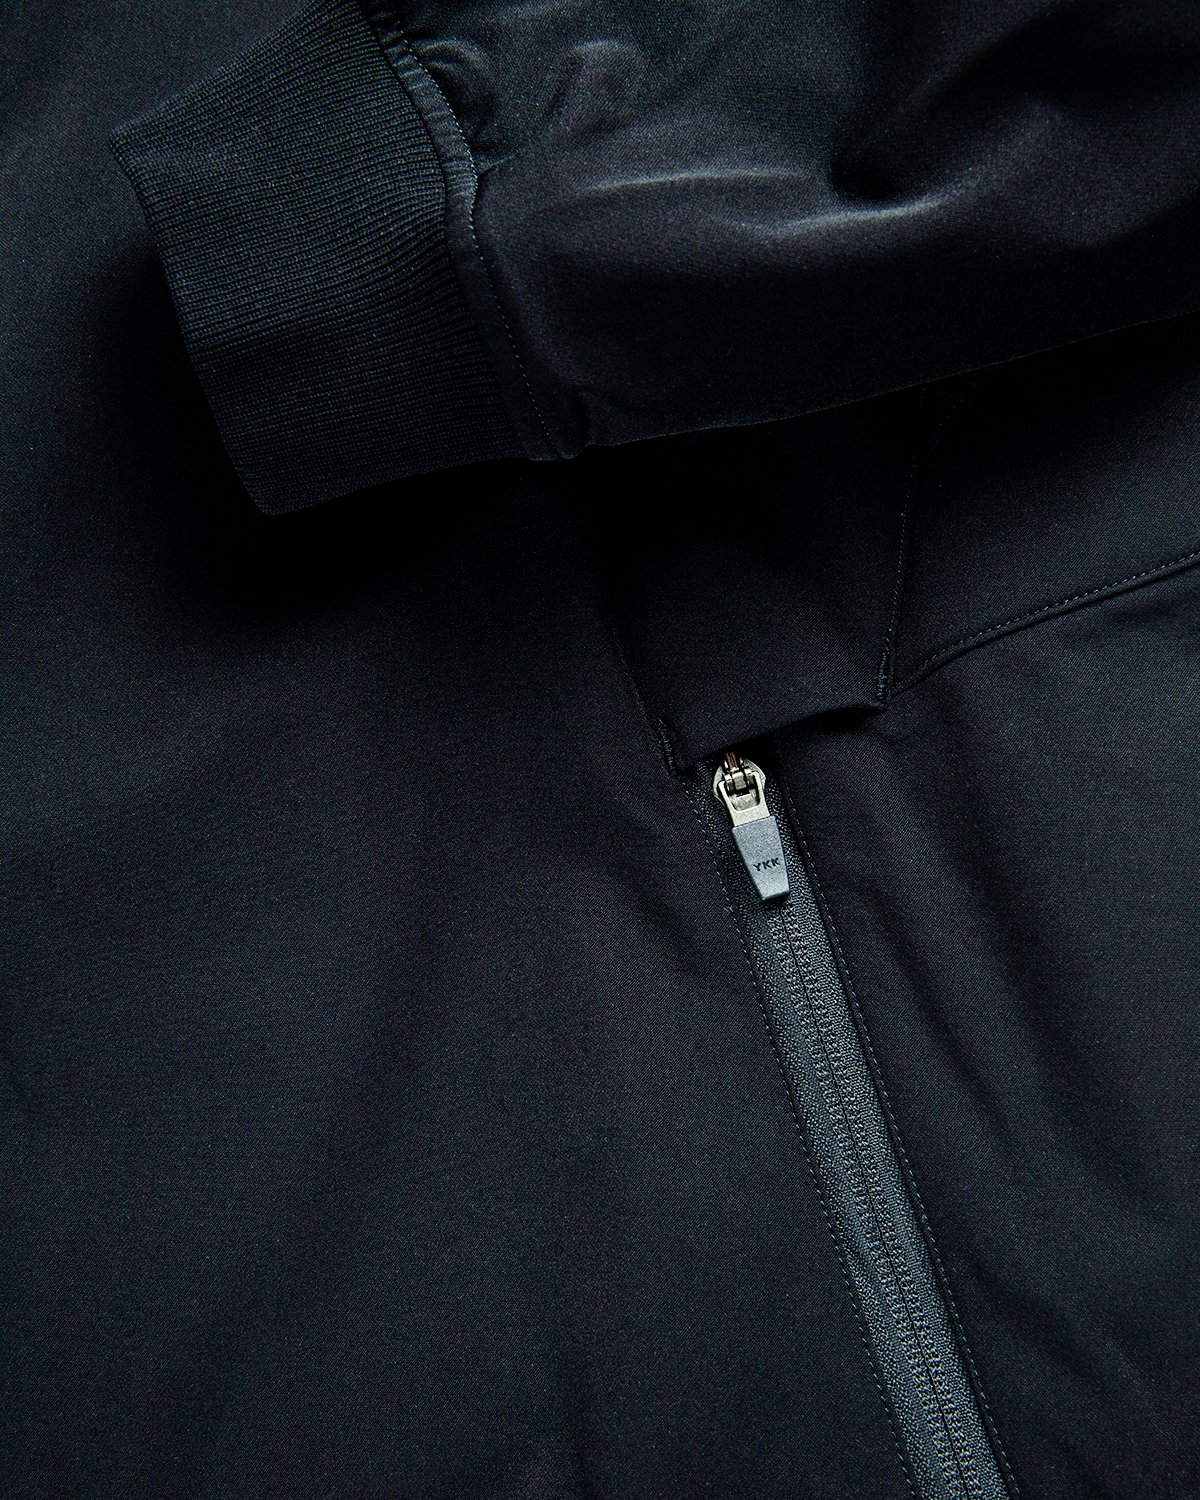 ACRONYM - J90-DS Jacket Black - Clothing - Black - Image 7